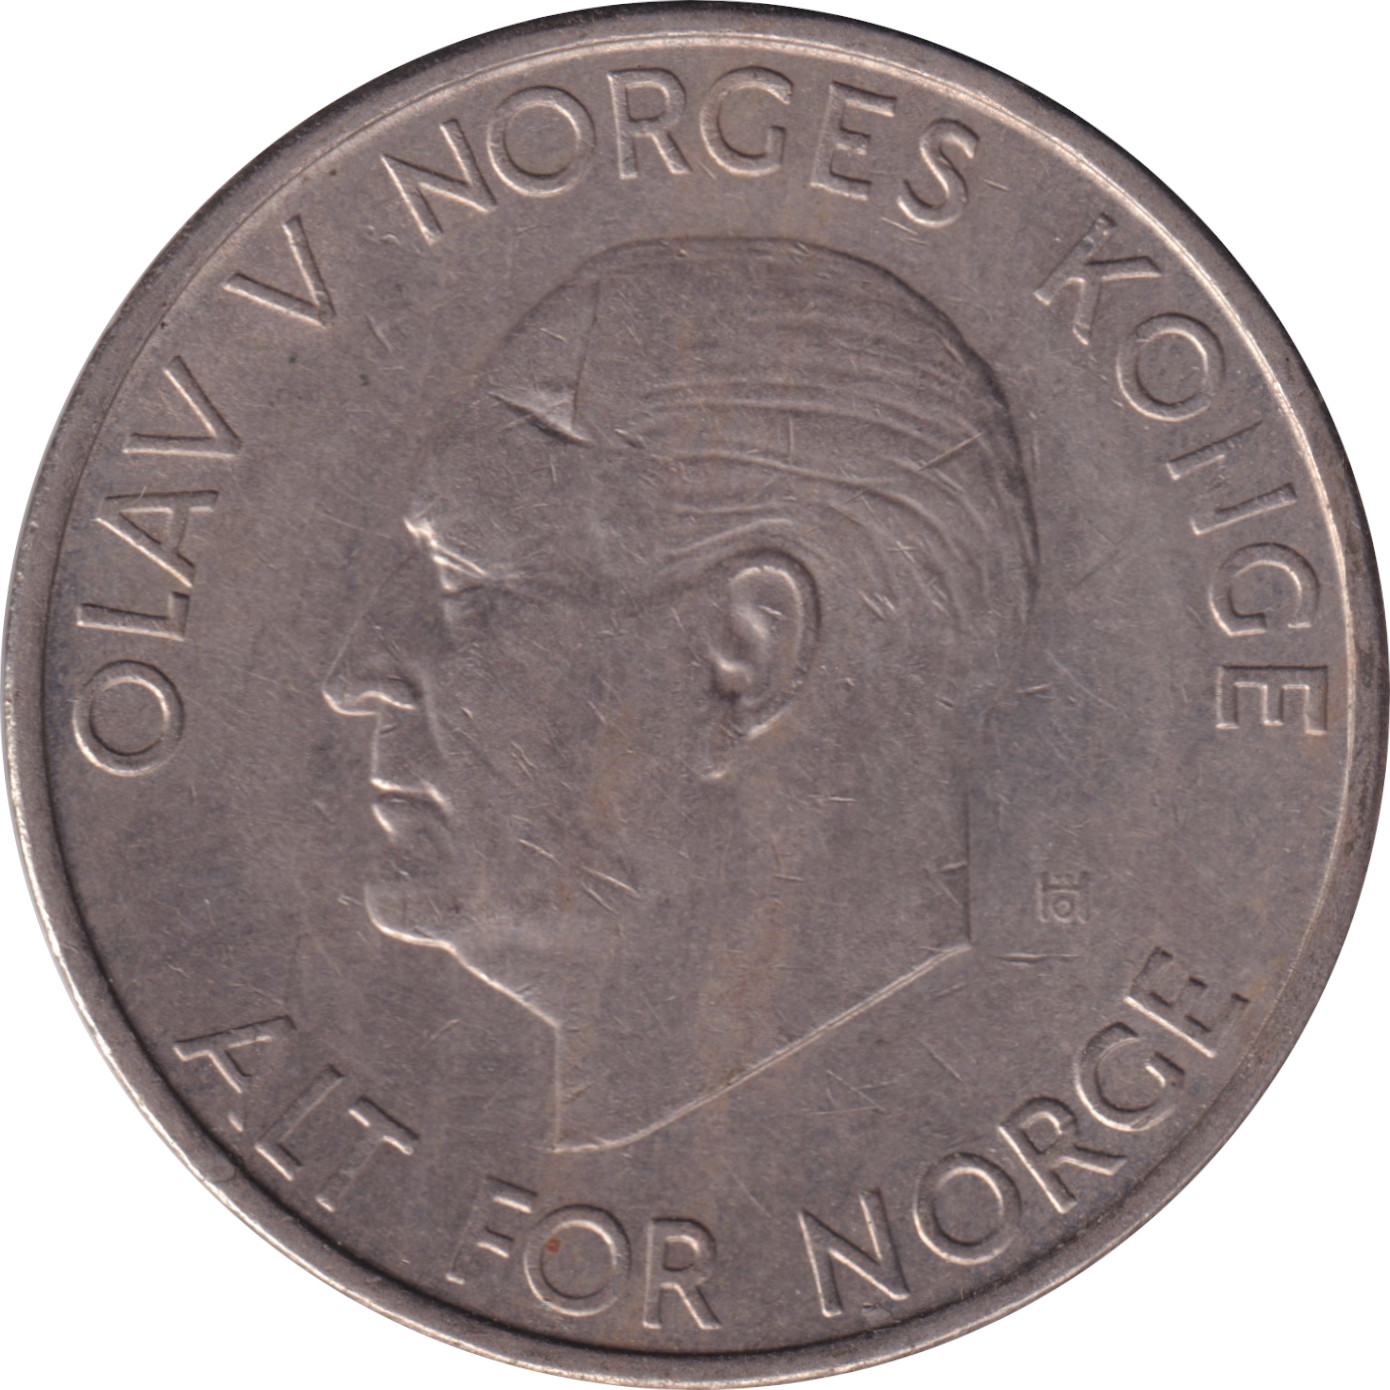 5 kroner - Olaf V - Mature head